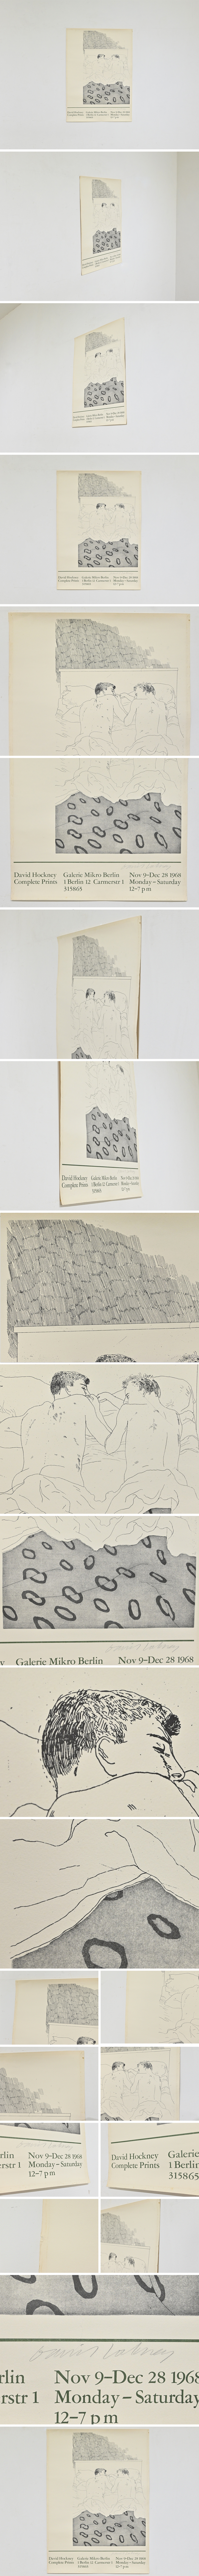 【HOT特価】デイヴィッド・ホックニー リトグラフポスター 1968年 Galerie Mikro 直筆サイン入り 真作保証/マティス アンディウォーホル ピカソ 石版画、リトグラフ